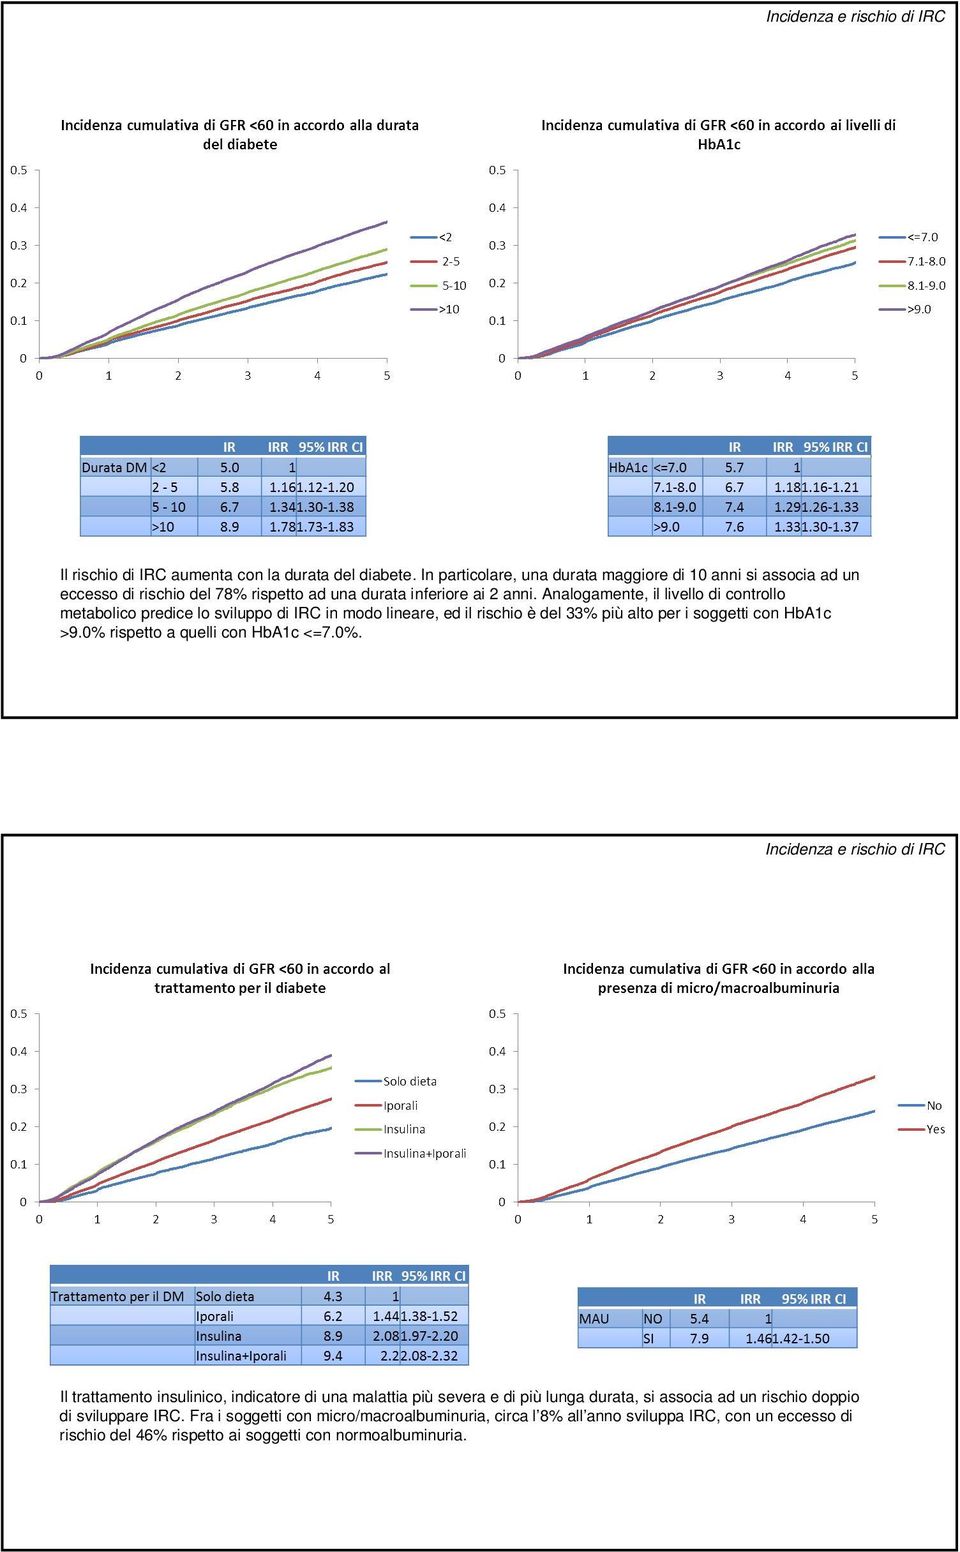 Analogamente, il livello di controllo metabolico predice lo sviluppo di IRC in modo lineare, ed il rischio è del 33% più alto per i soggetti con HbA1c >9.